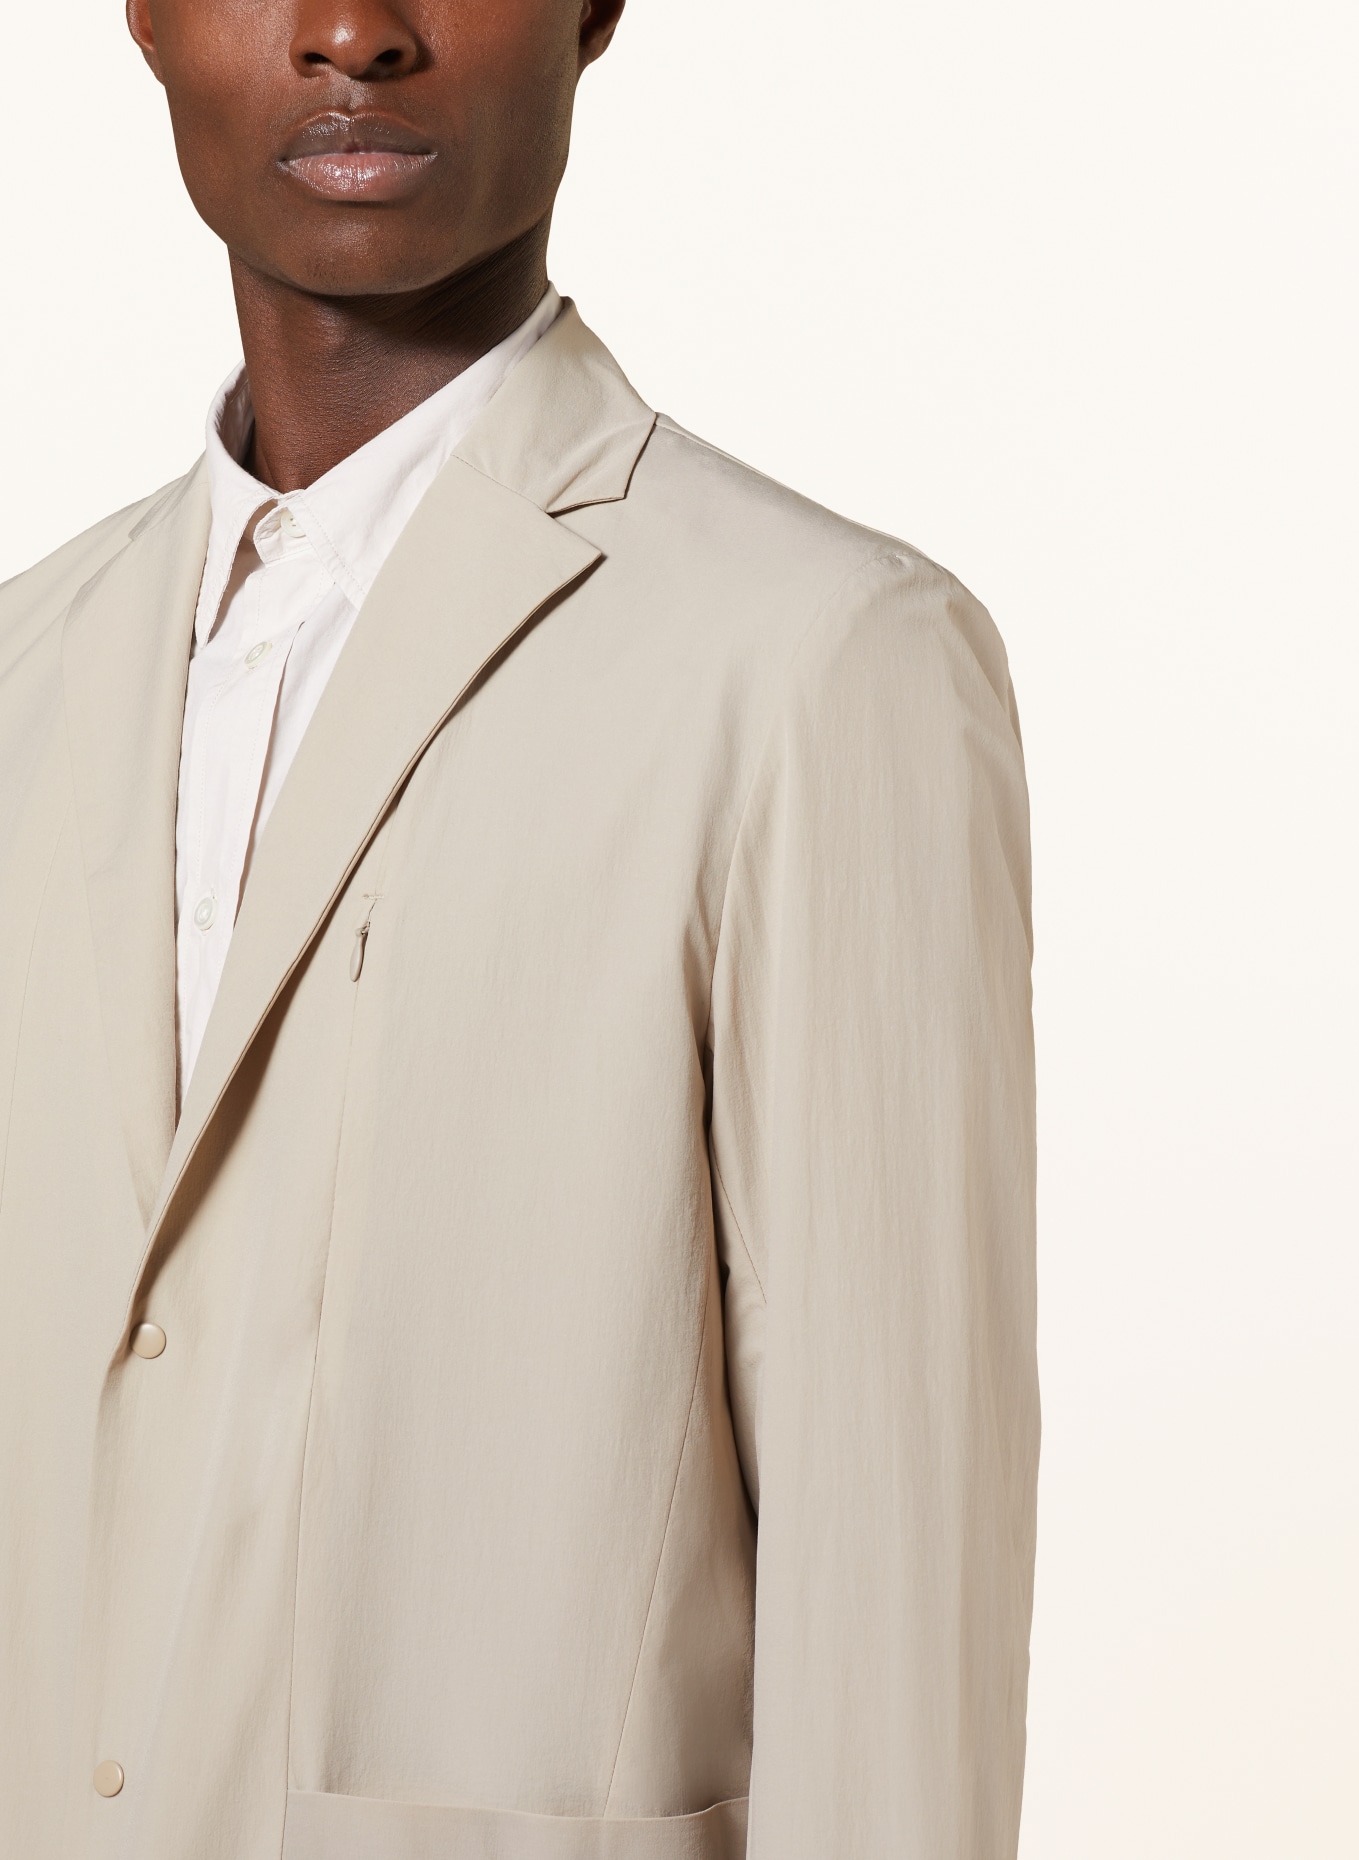 NORSE PROJECTS Suit jacket EMIL regular fit, Color: 0920 Light Khaki (Image 5)